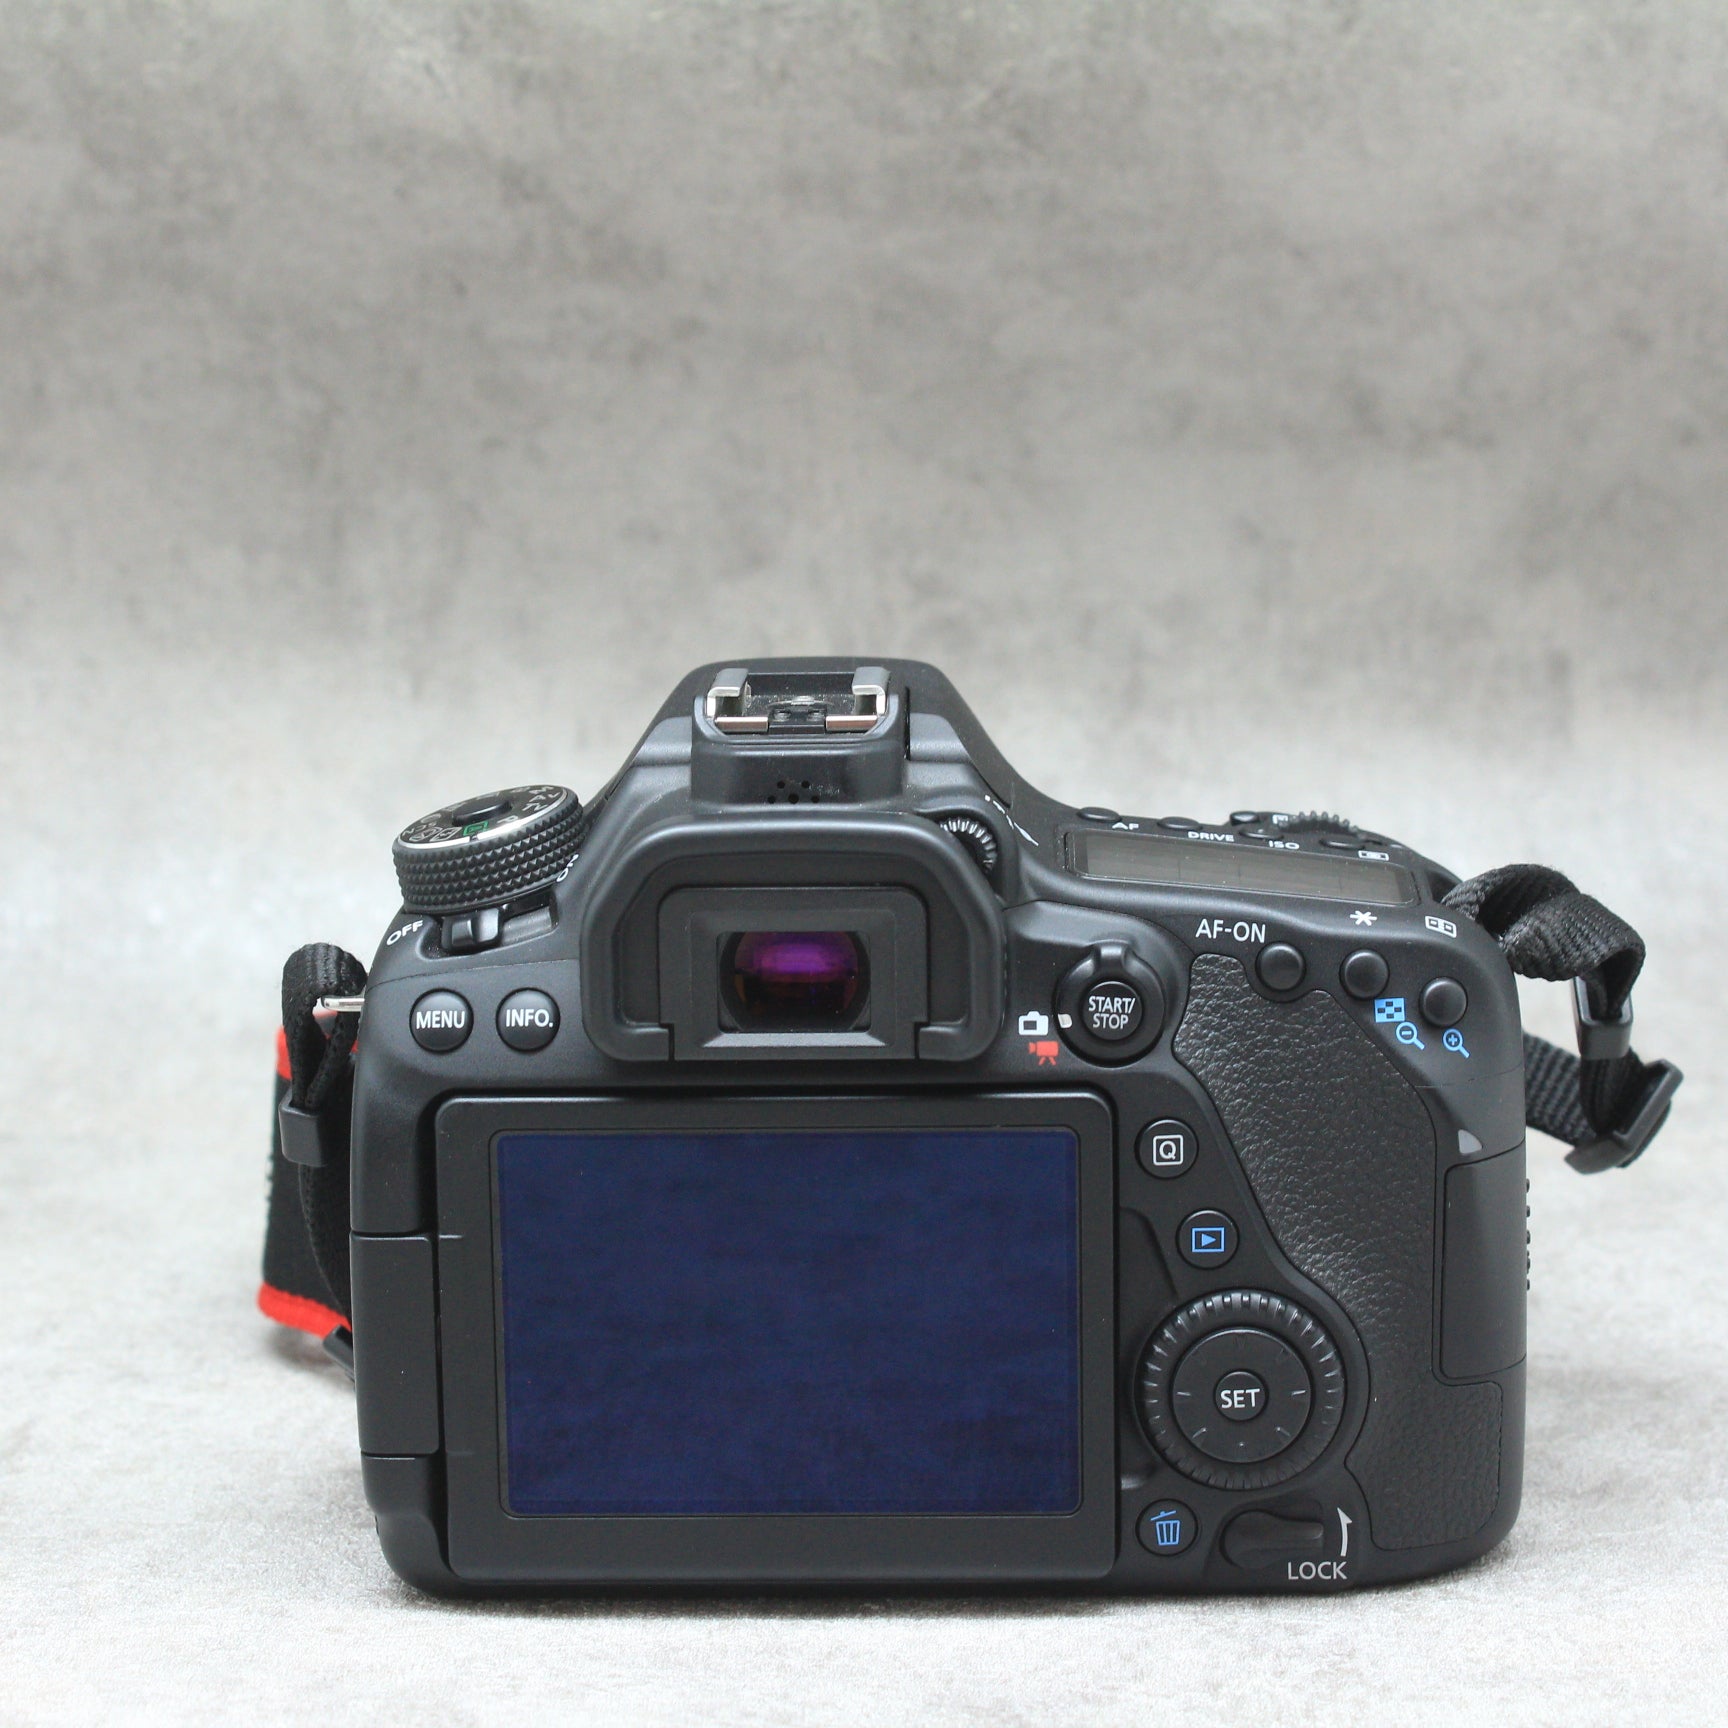 中古品 Canon EOS80D 18-135mm IS USM KIT さんぴん商会